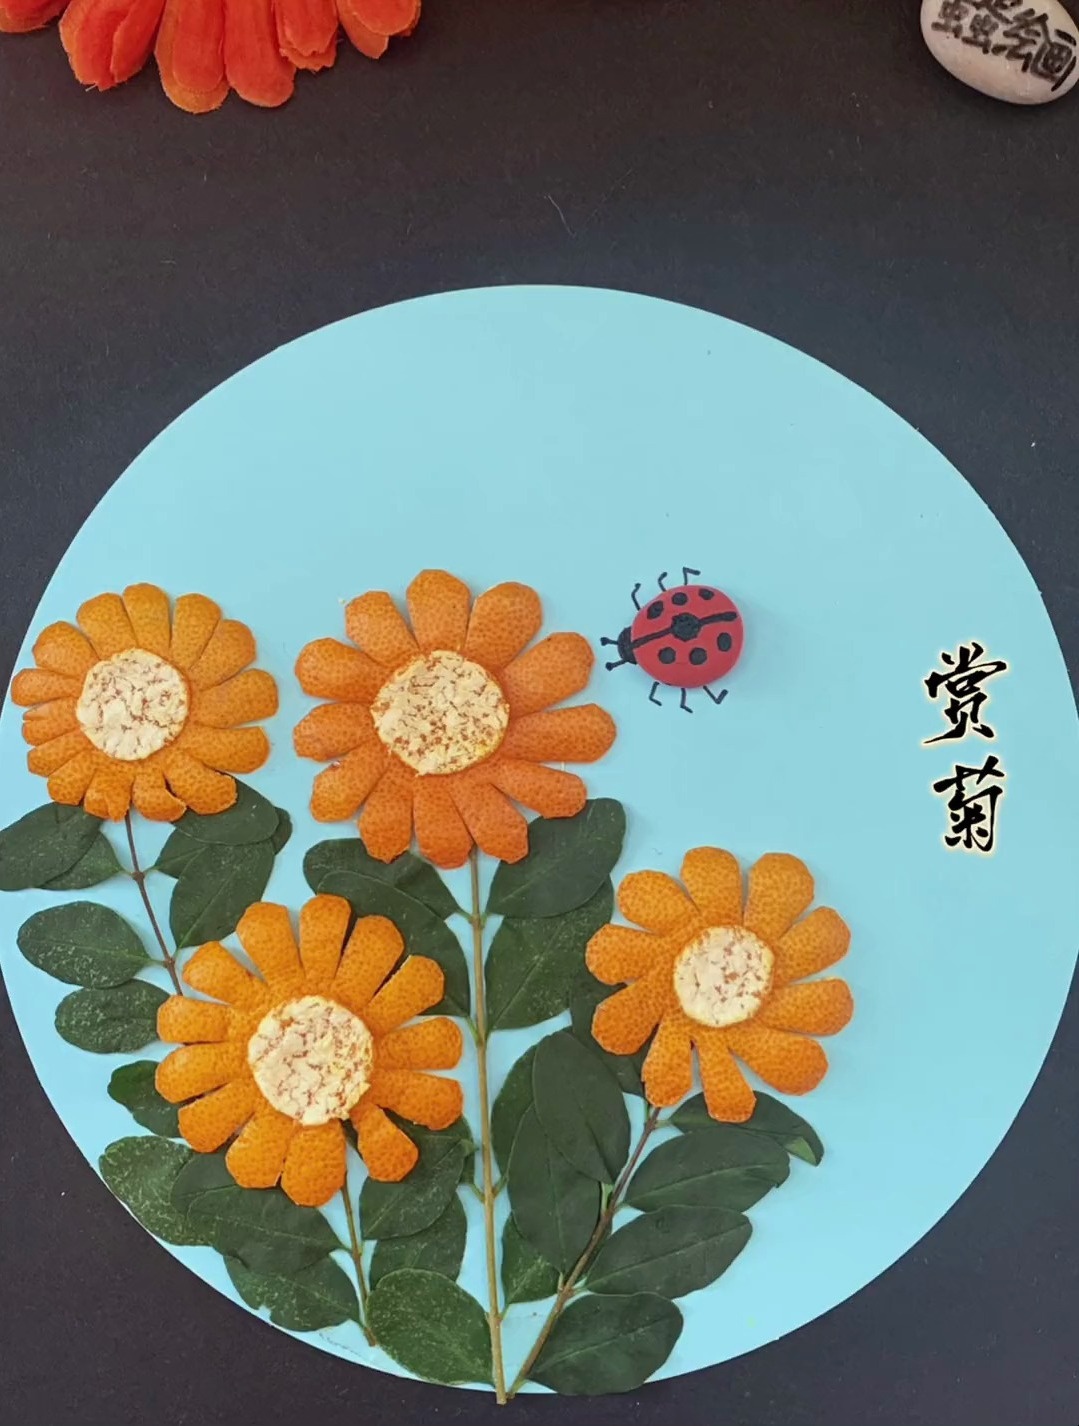 用吃完的桔子皮来做一幅菊的主题画吧!动手能力培养